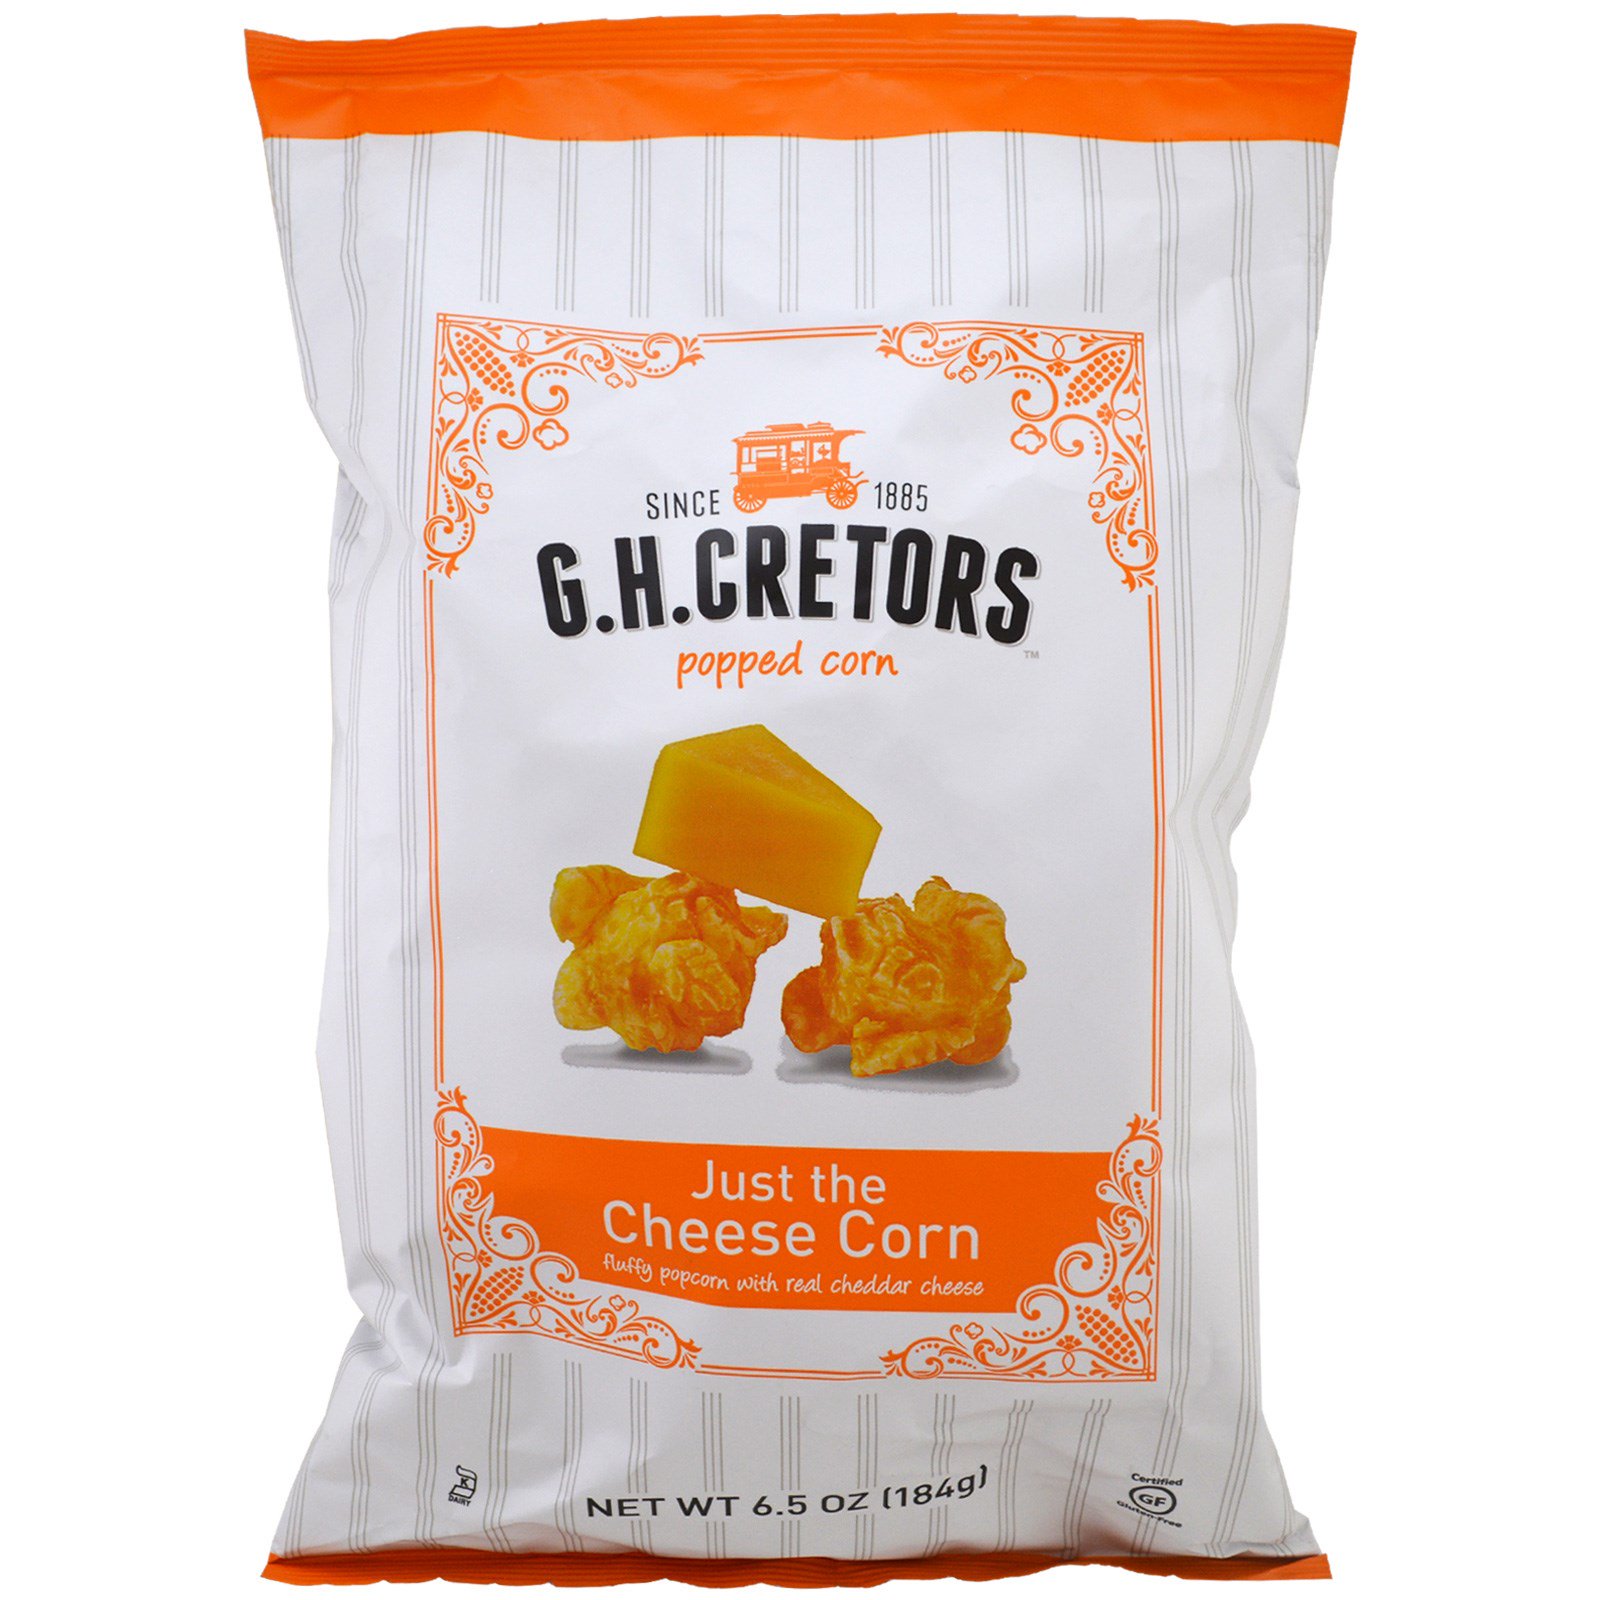 فشار GH Cretors بالجبن والذرة فقط 6 5 أوقية 184 جم Iherb